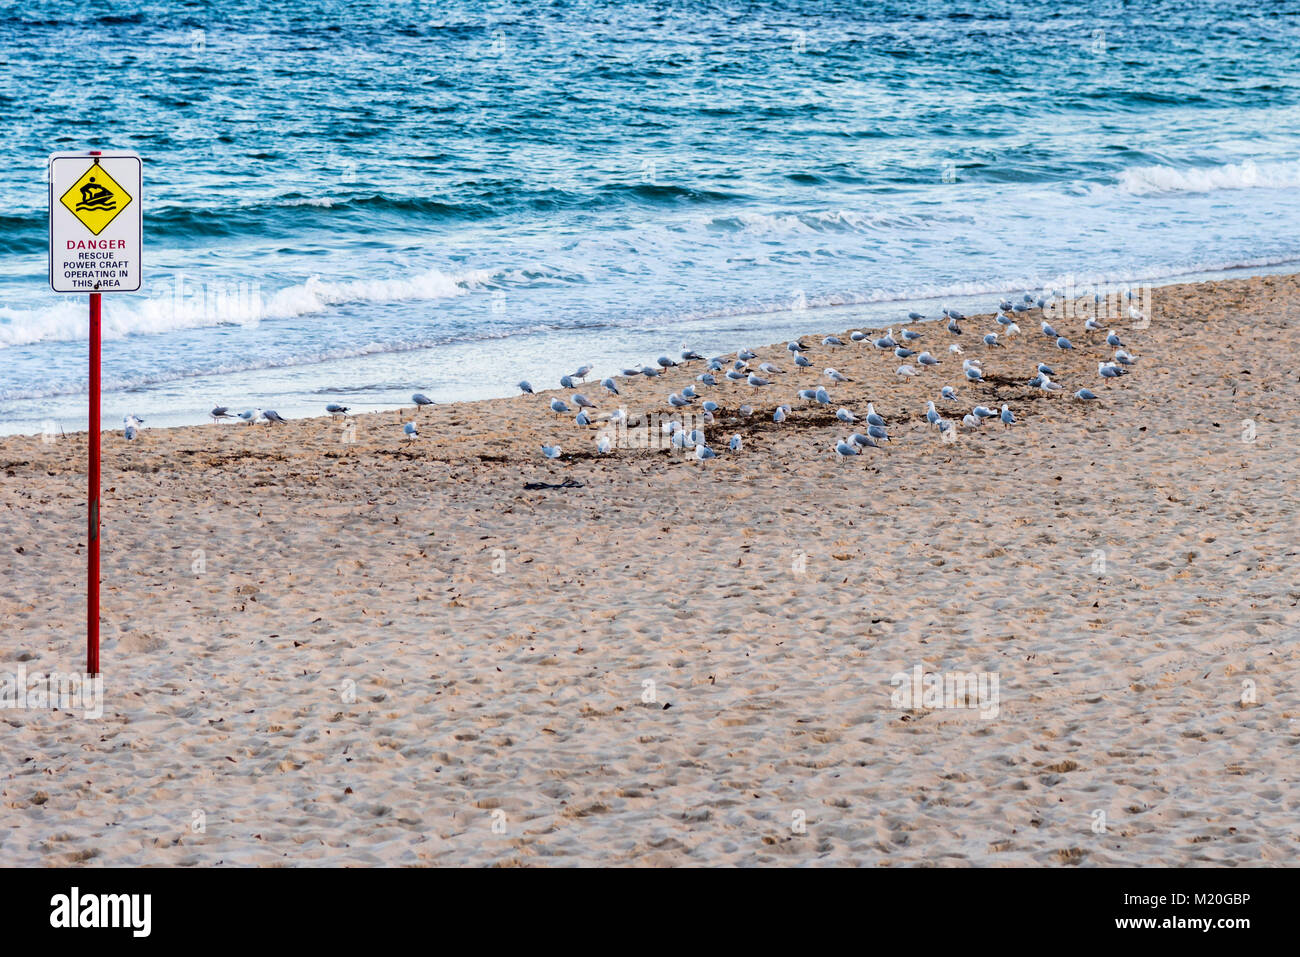 Leeren Strand, Möwen, ruhigen blauen Pazifischen Ozean mit Warnschild, tagsüber. Schritte auf Sandstrand und Schwarm Vögel in ruhiger Tasman Sea. Stockfoto